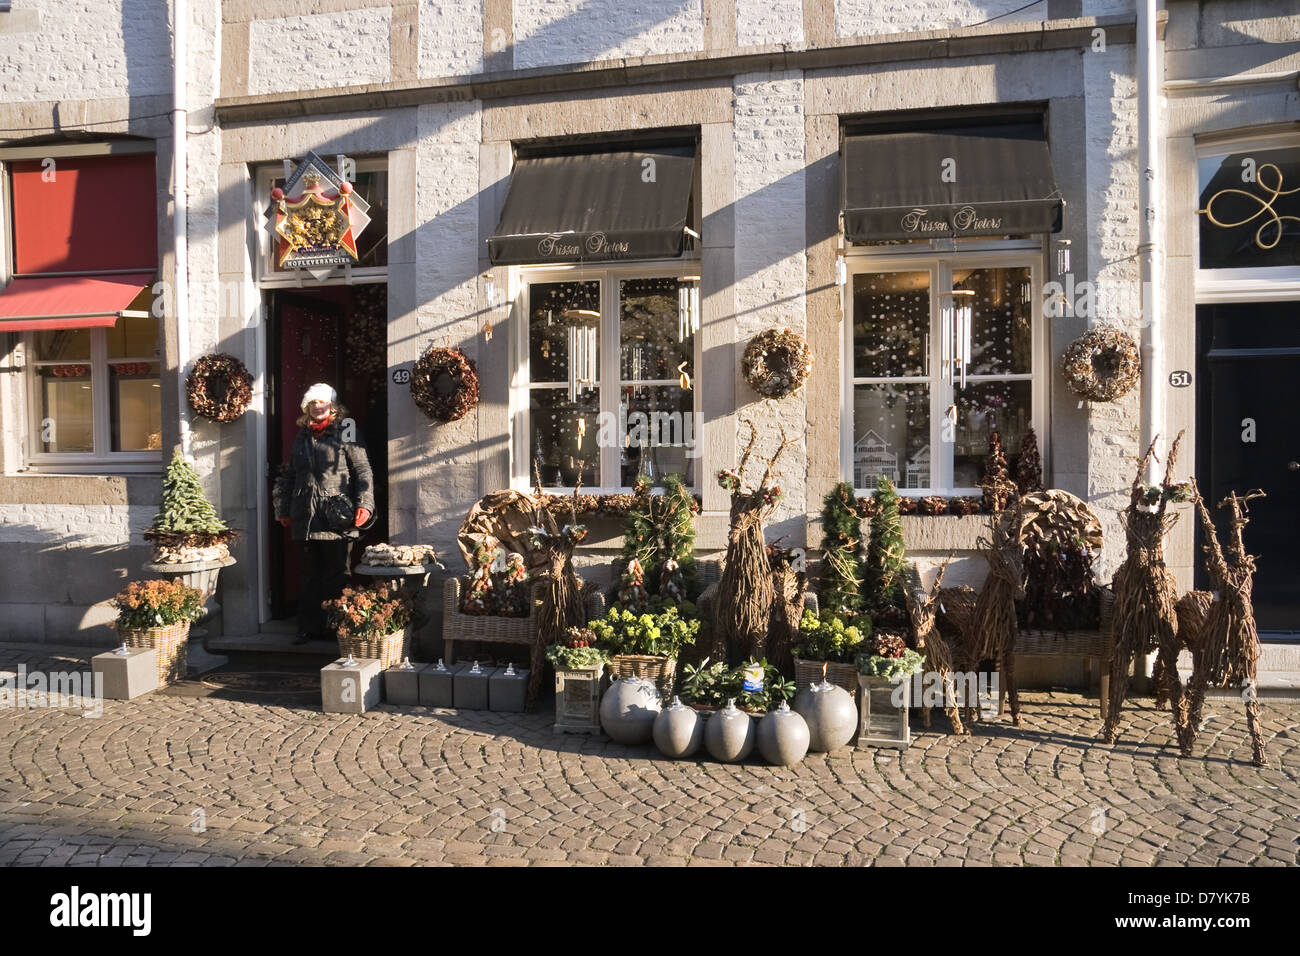 Blume und Garten Dekoration Shop in Maastricht, Niederlande über das  Einfrieren von kalten und sonnigen Tag im Dezember Stockfotografie - Alamy